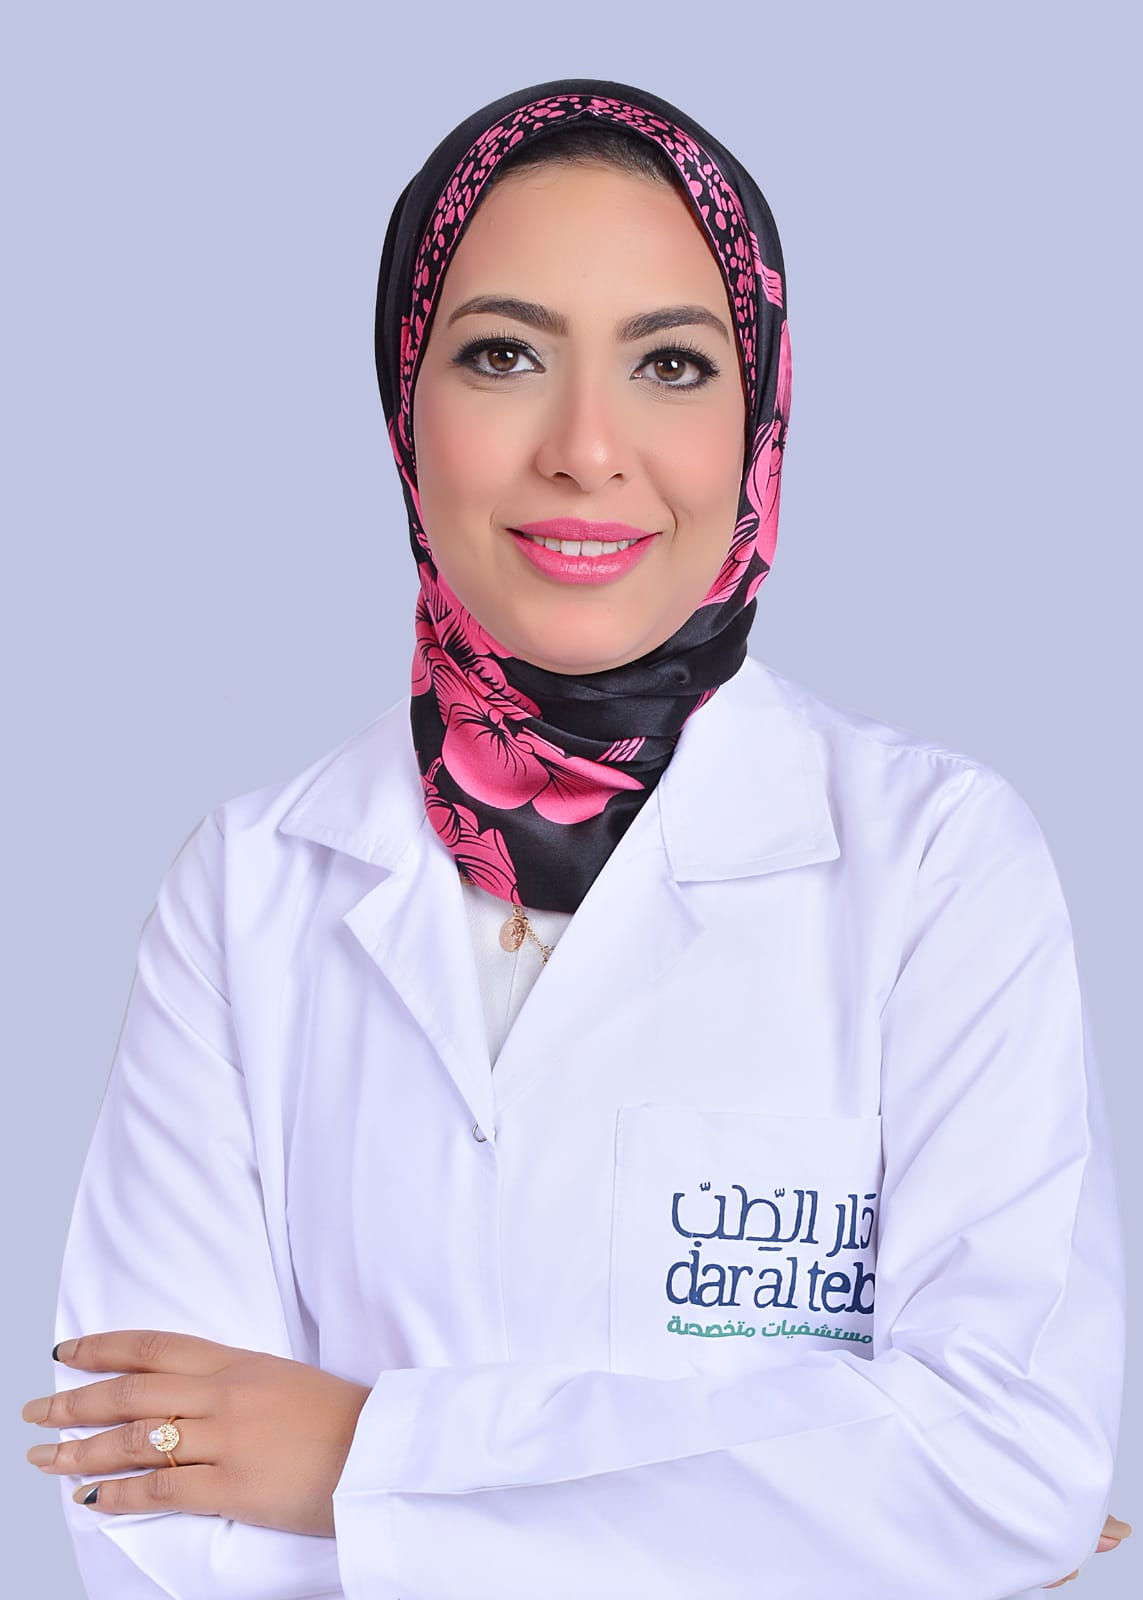 Dr. Dalia Rashad